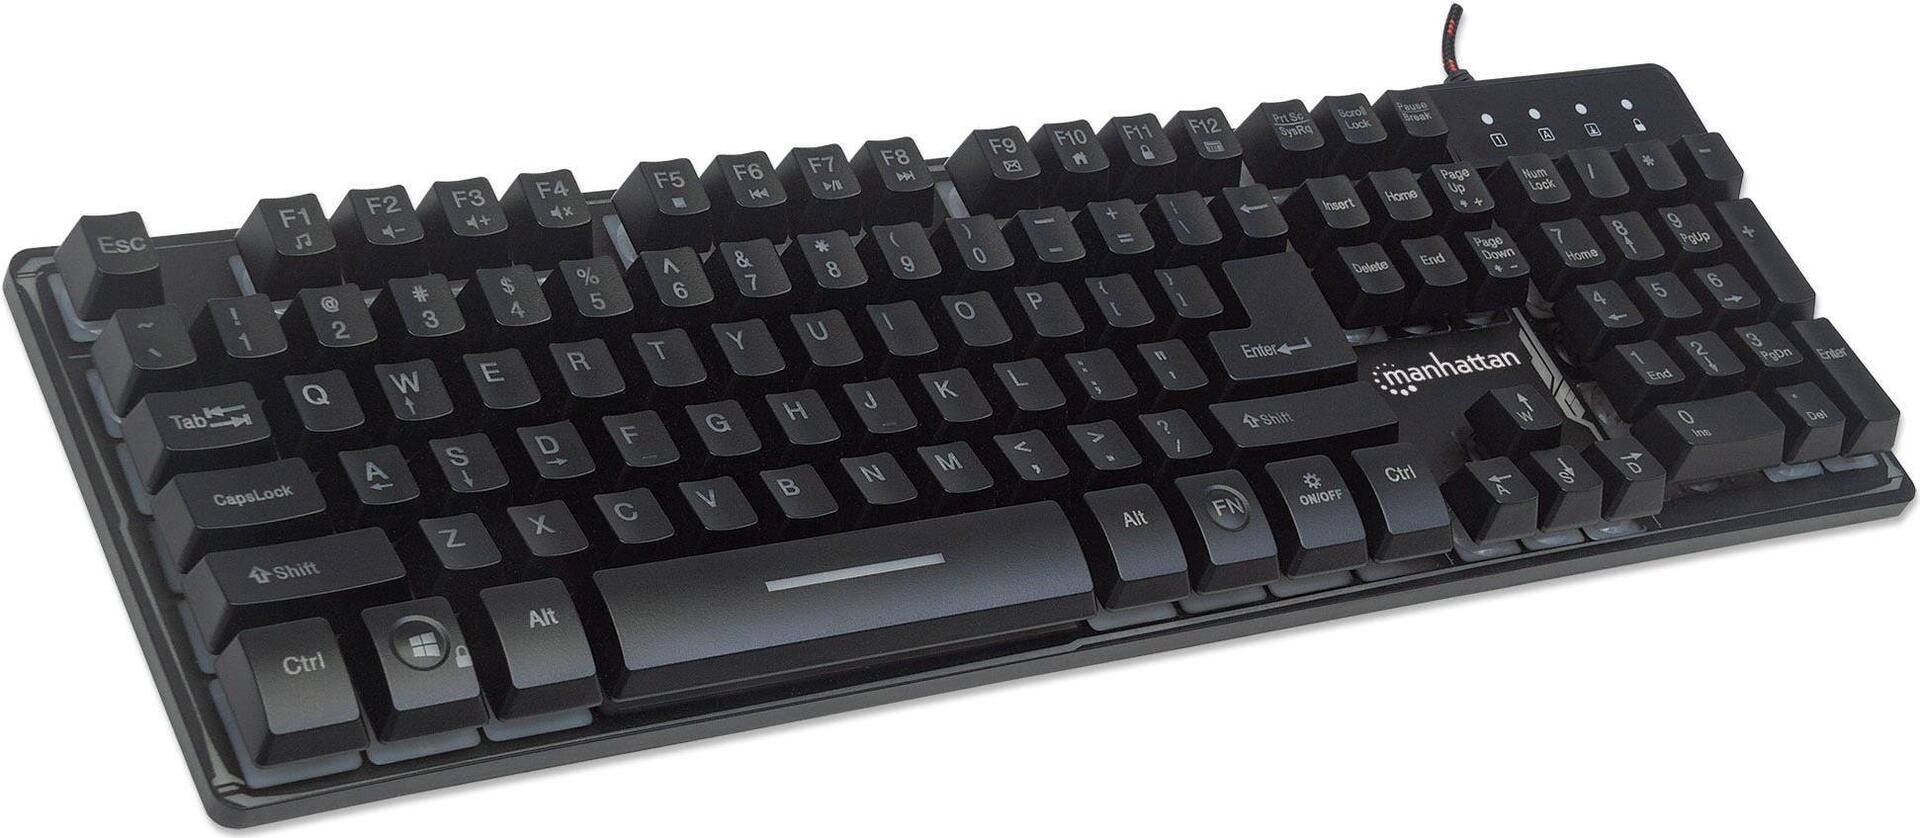 MANHATTAN USB-Gaming-Tastatur mit LEDs und Metallunterseite 12 Funktionstasten, Metallunterseite, farbige LED-Hintergrundbeleuchtung, 19 Anti-Ghosting-Tasten, Schutzklasse IPX4 (spritzwassergeschützt), schwarz (178457)